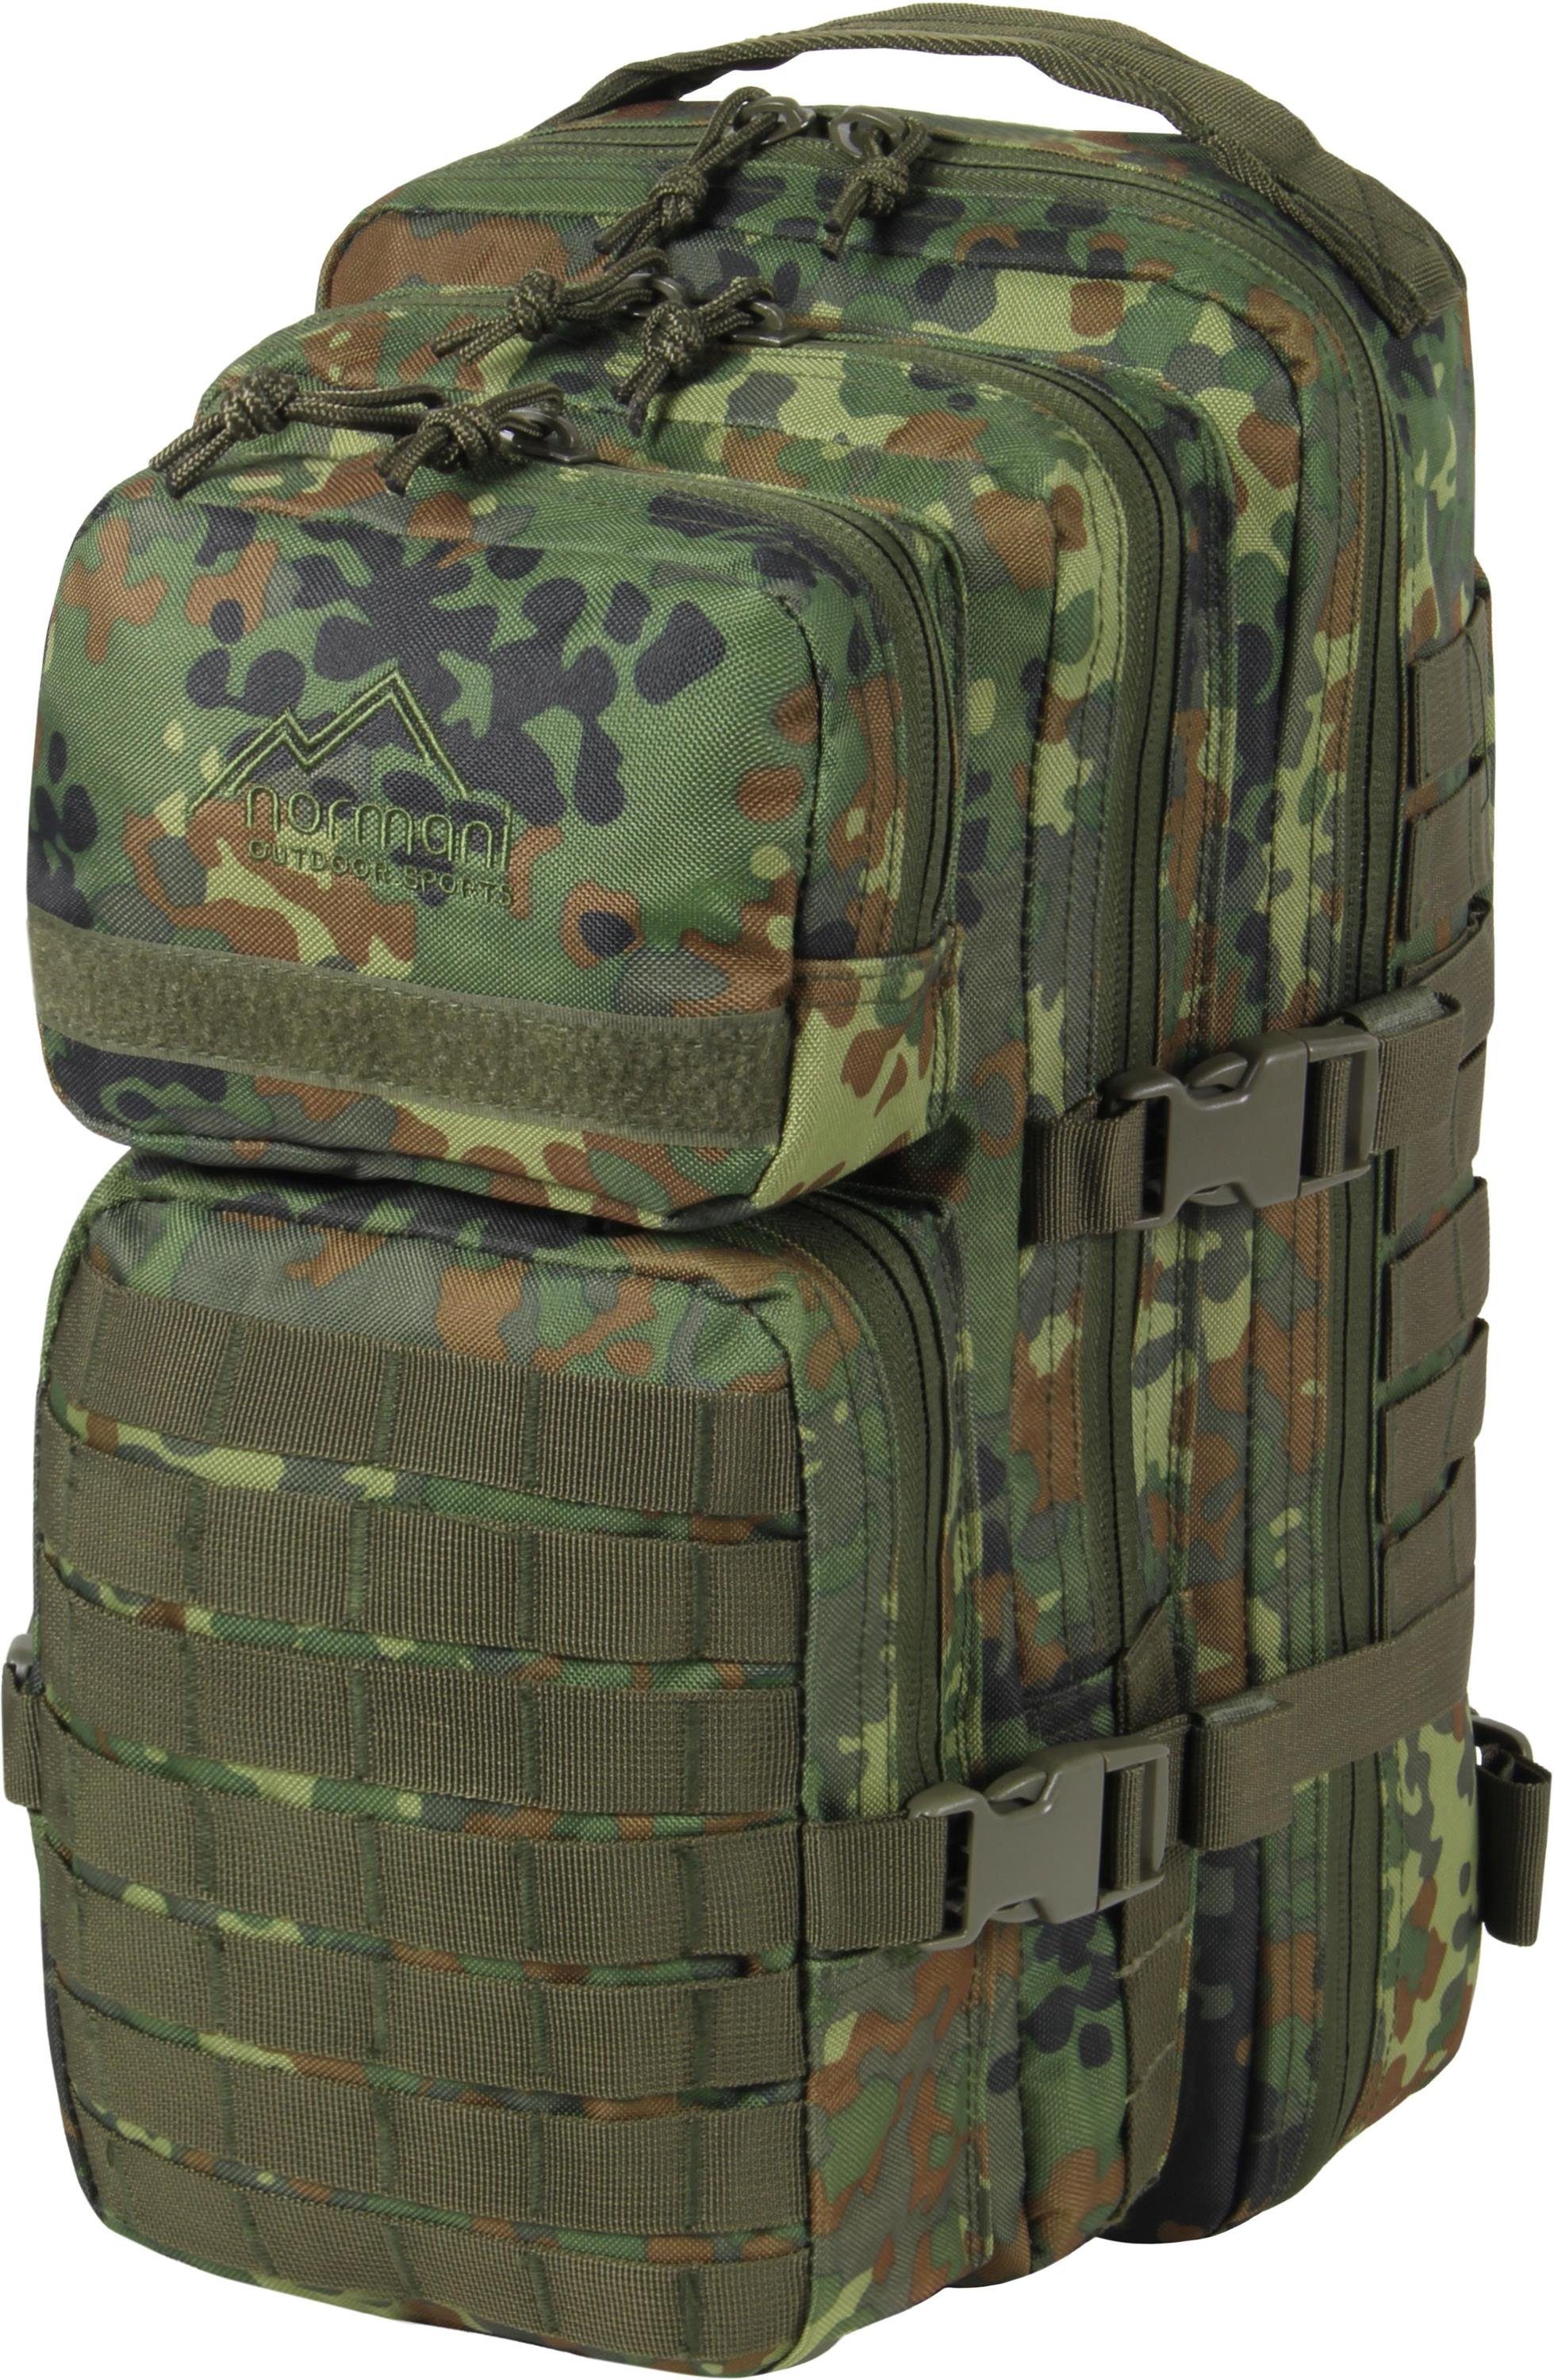 normani Daypack Daypack Rucksack 30 Liter Bedrock, Tagesrucksack Einsatzrucksack Schulrucksack Assault Pack